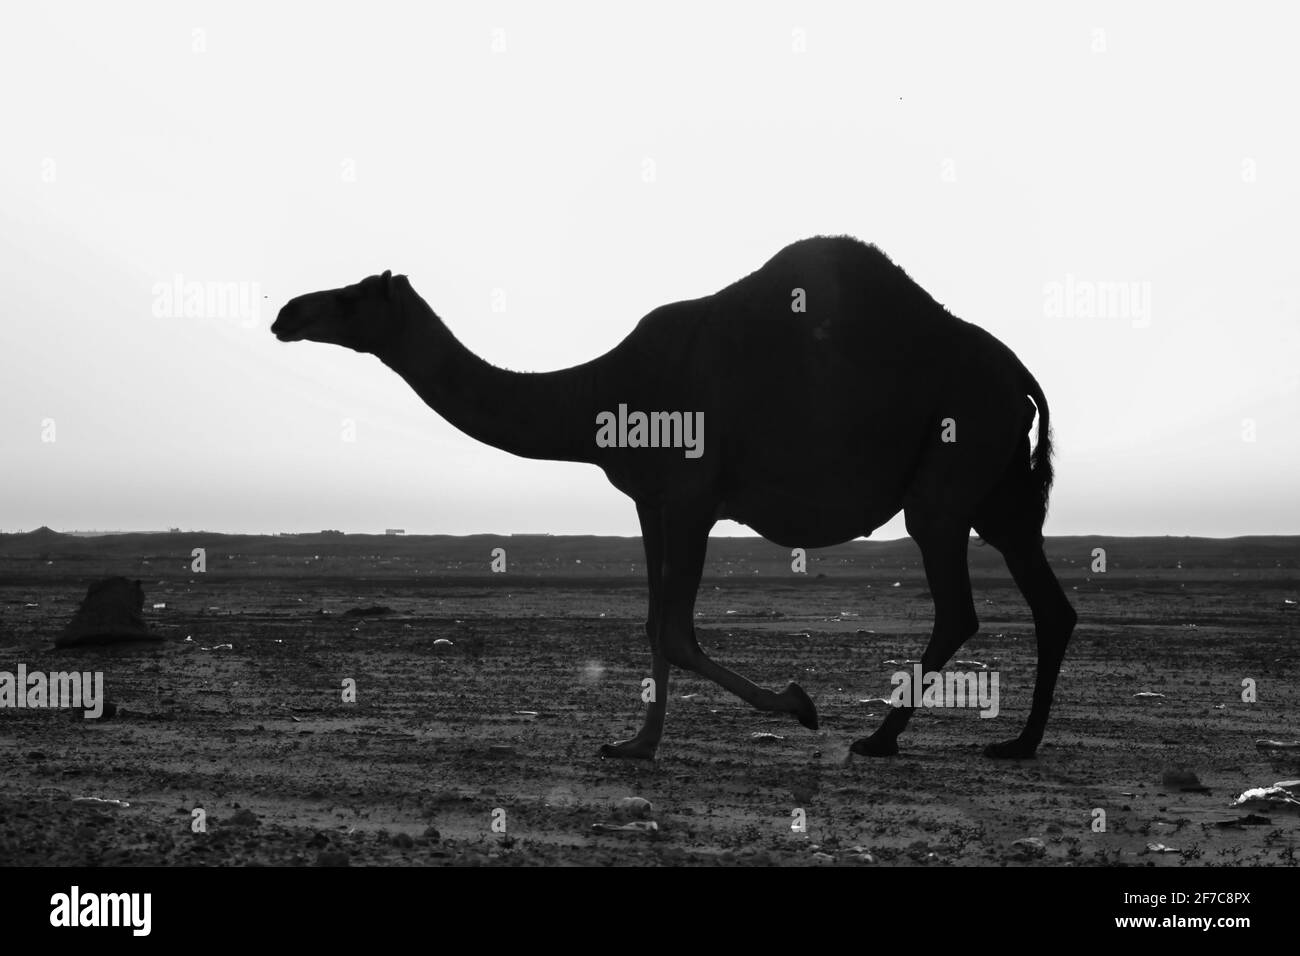 Tête de chameau Banque d'images noir et blanc - Page 2 - Alamy